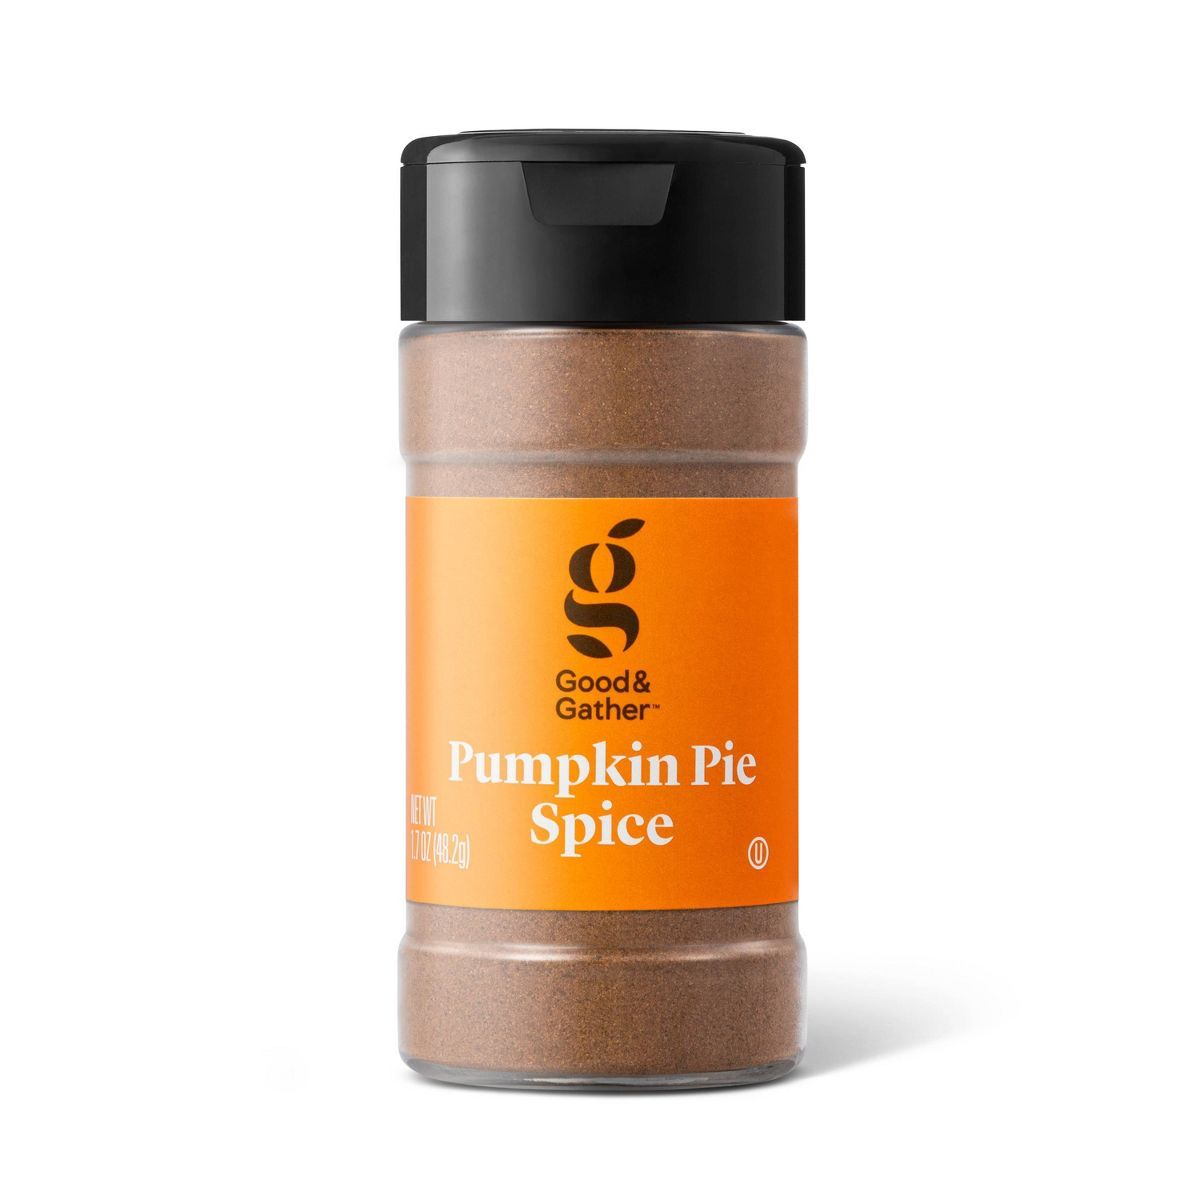 Pumpkin Pie Spice - 1.7oz - Good & Gather™ | Target